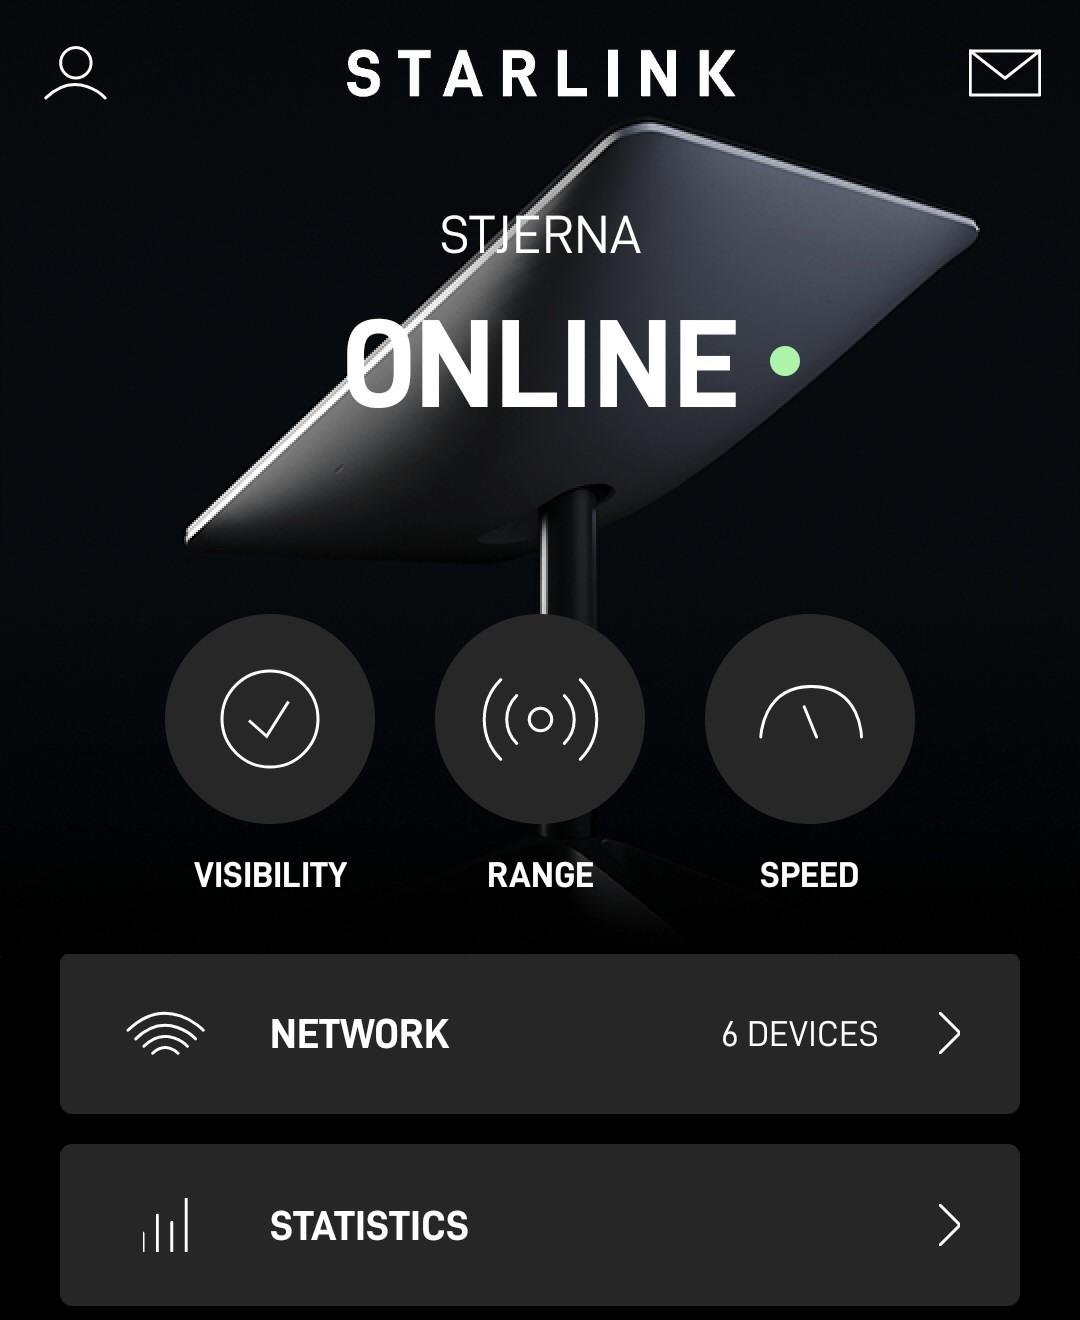 Starlink-appen hadde vi riktignok litt trøbbel med, men den er helt nødvendig og veldig kjekk for å sjekke stabiliteten og kvaliteten på internettforbindelsen.